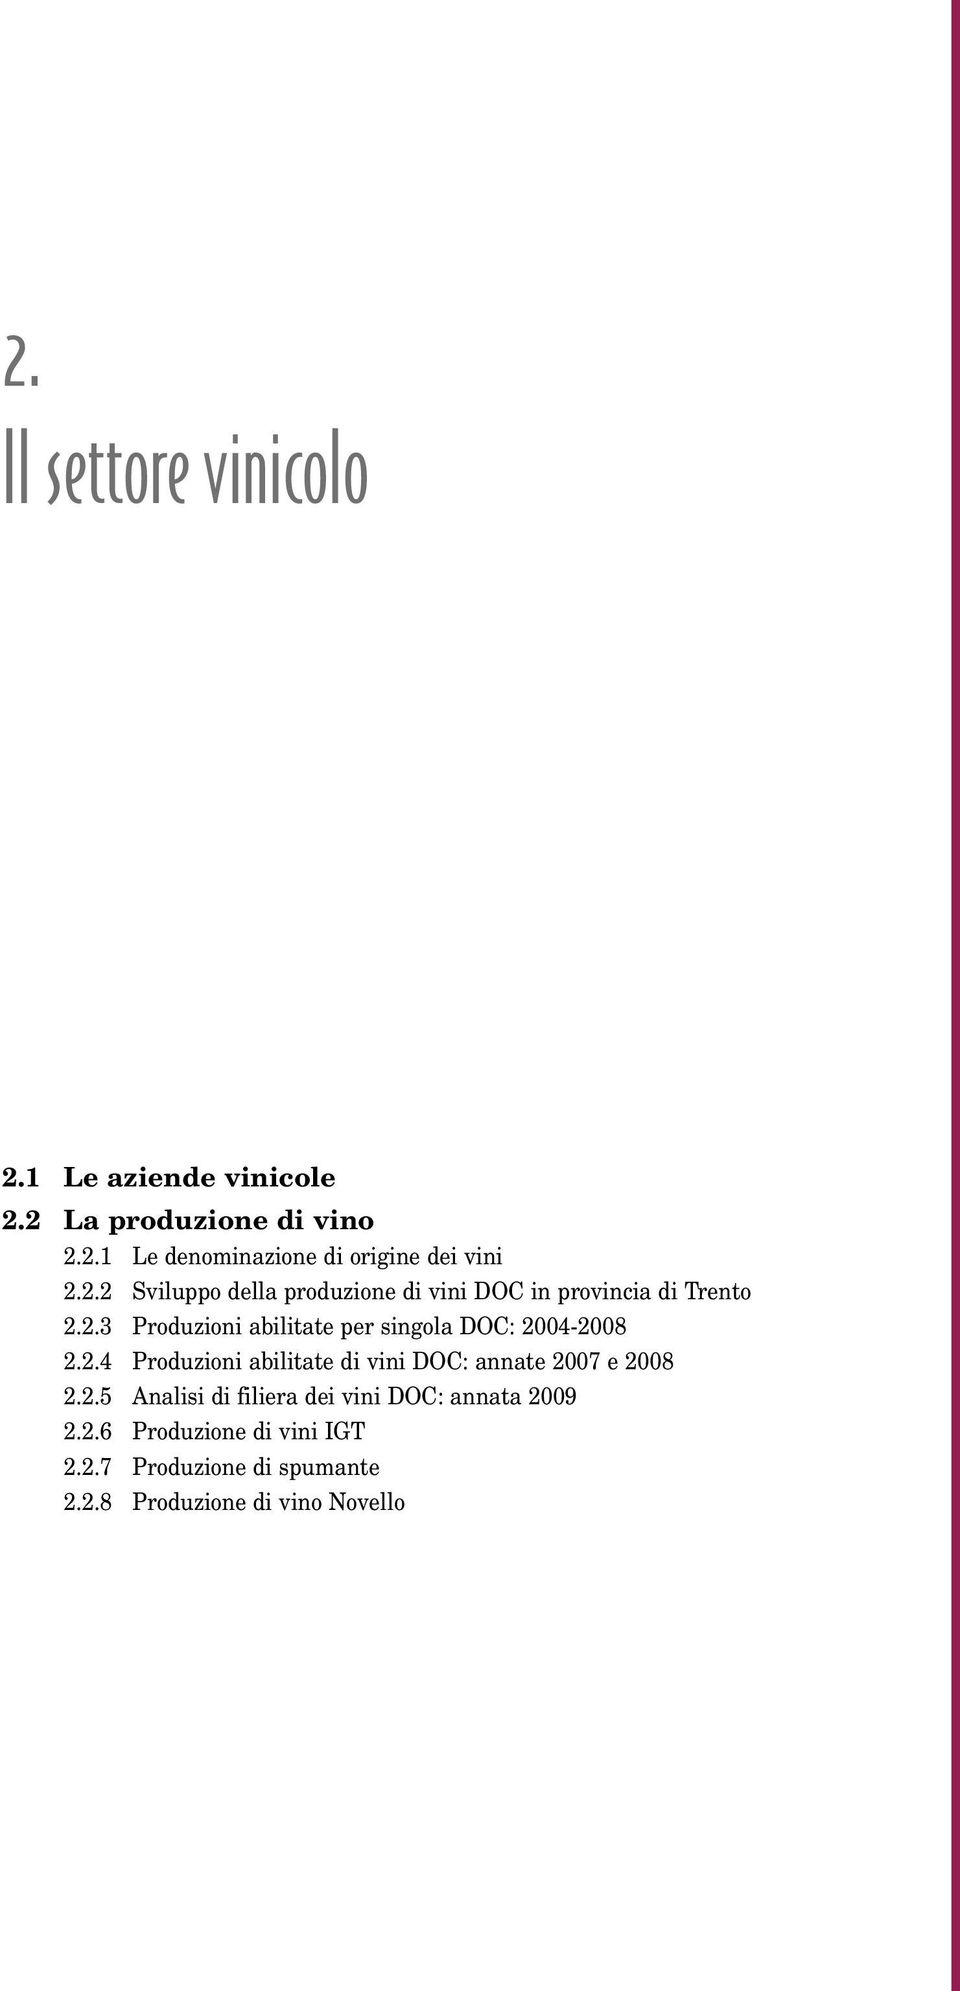 2.4 Produzioni abilitate di vini DOC: annate 2007 e 2008 2.2.5 Analisi di filiera dei vini DOC: annata 2009 2.